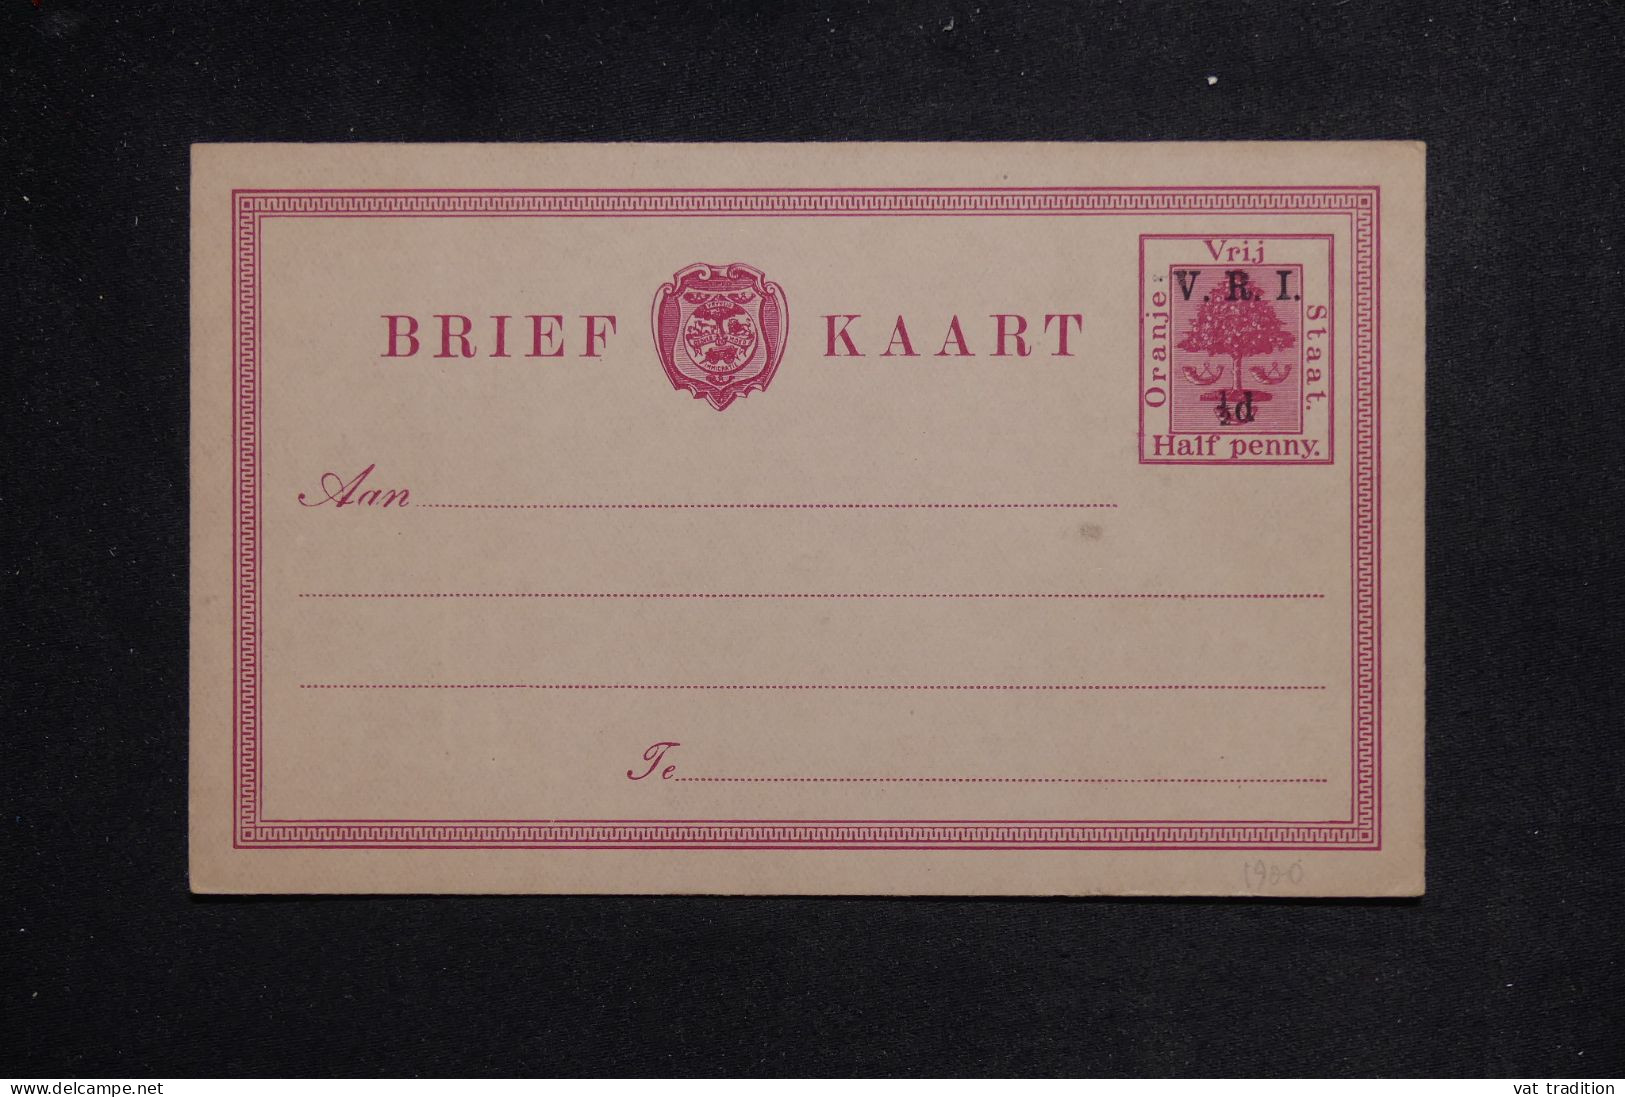 ORANGE - Entier Postal Type  Surchargé , Non Circulé - L 151149 - Oranje-Freistaat (1868-1909)